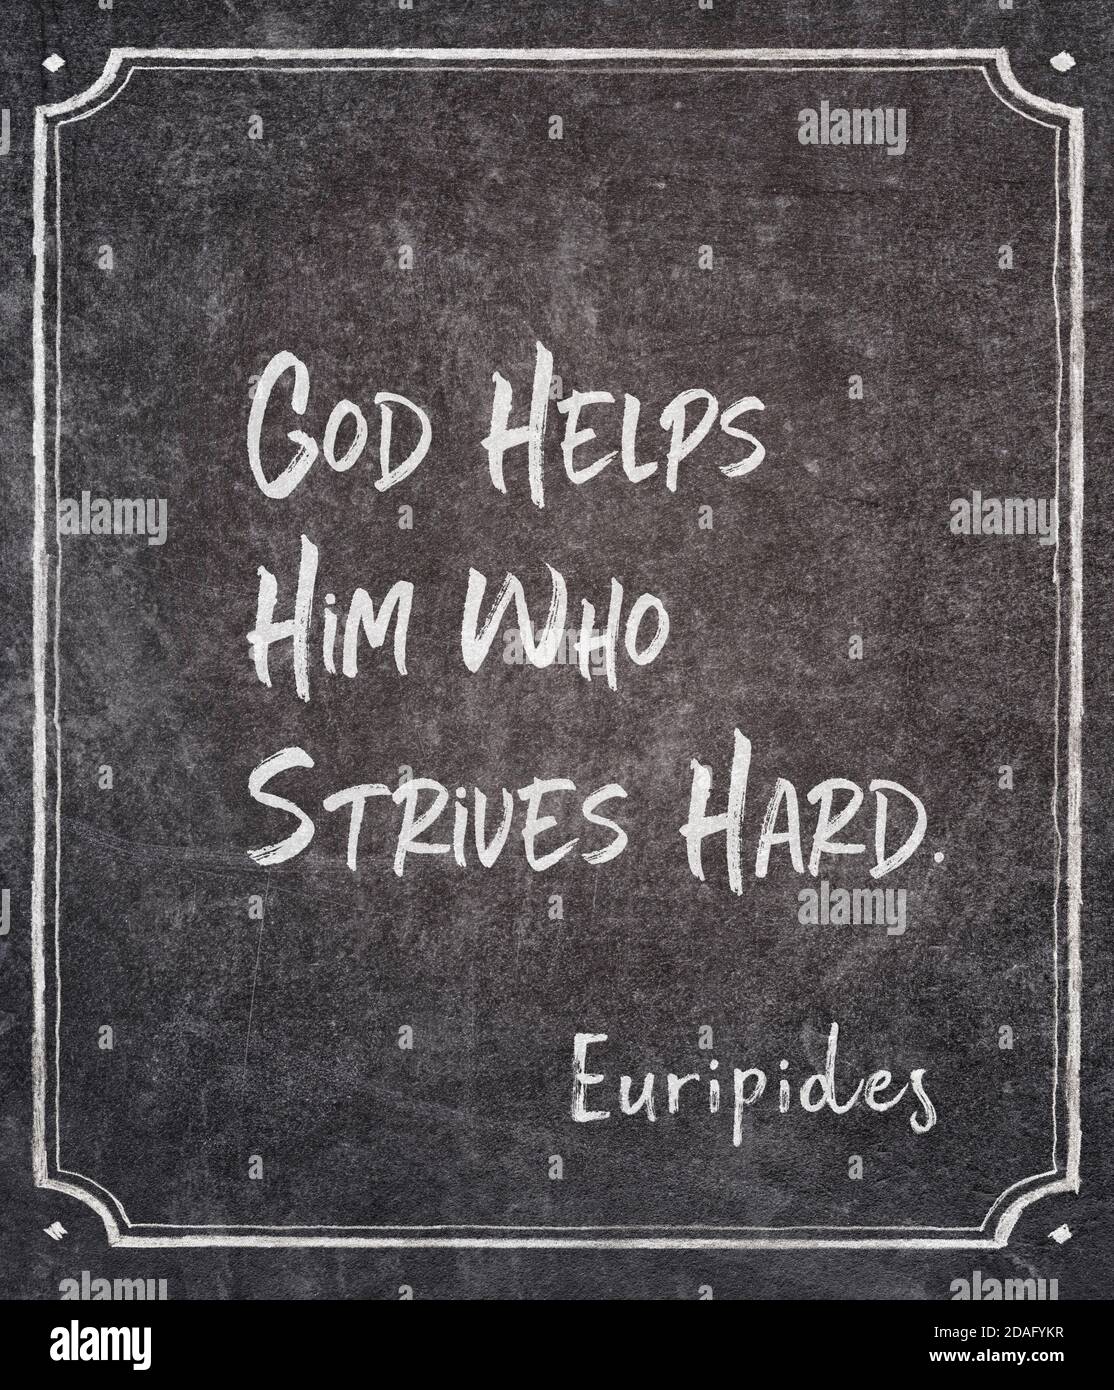 Gott hilft dem, der sich bemüht - altgriechischer Philosoph Euripides Zitat auf gerahmter Tafel geschrieben Stockfoto